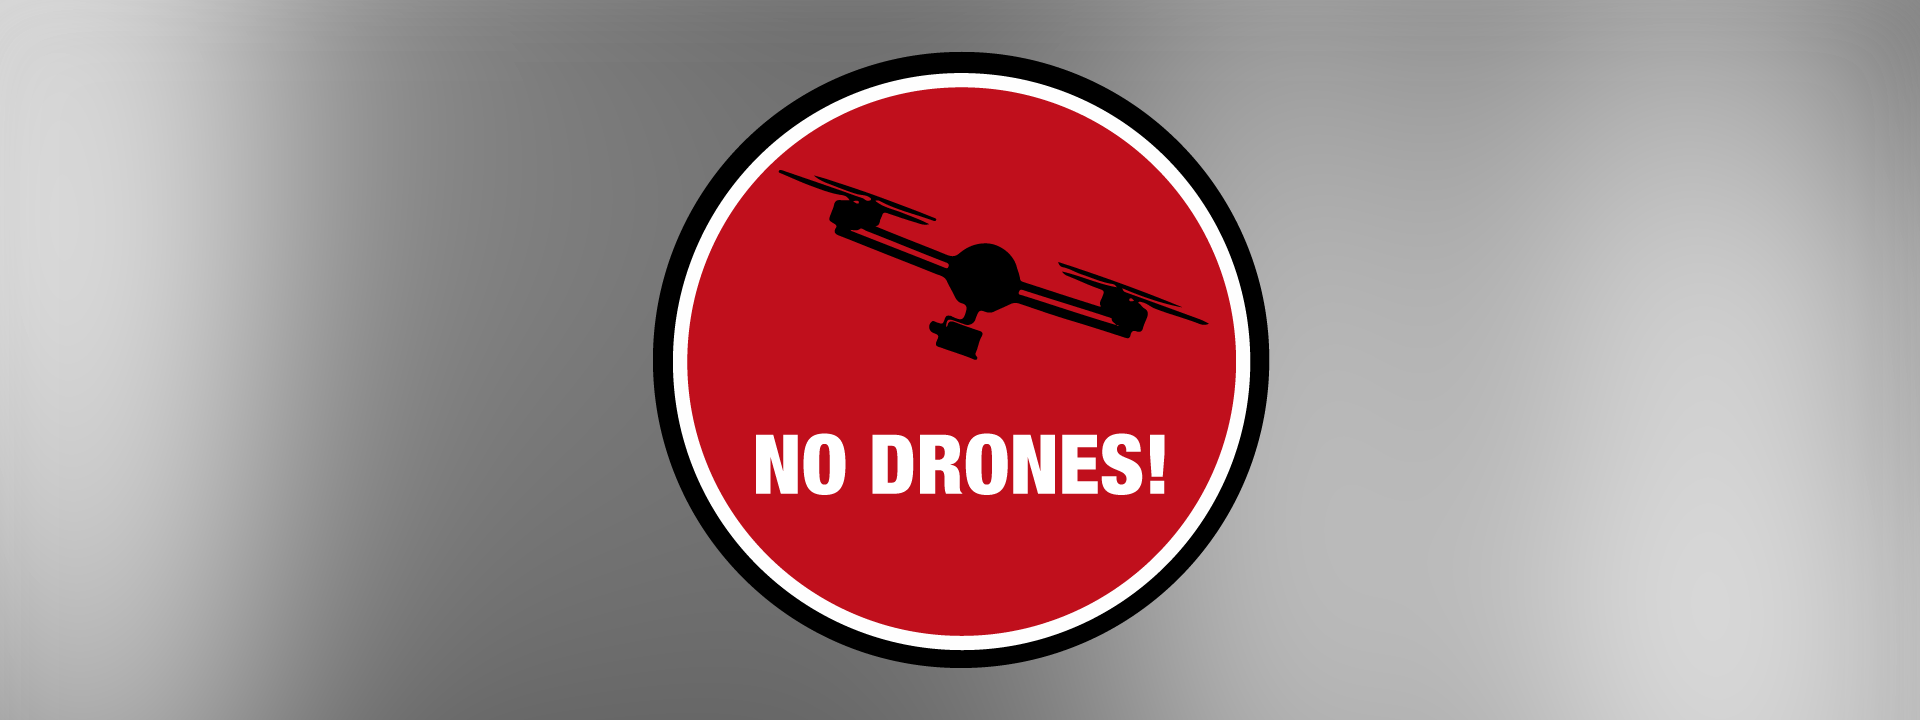 Los sistemas de inhibición para drones